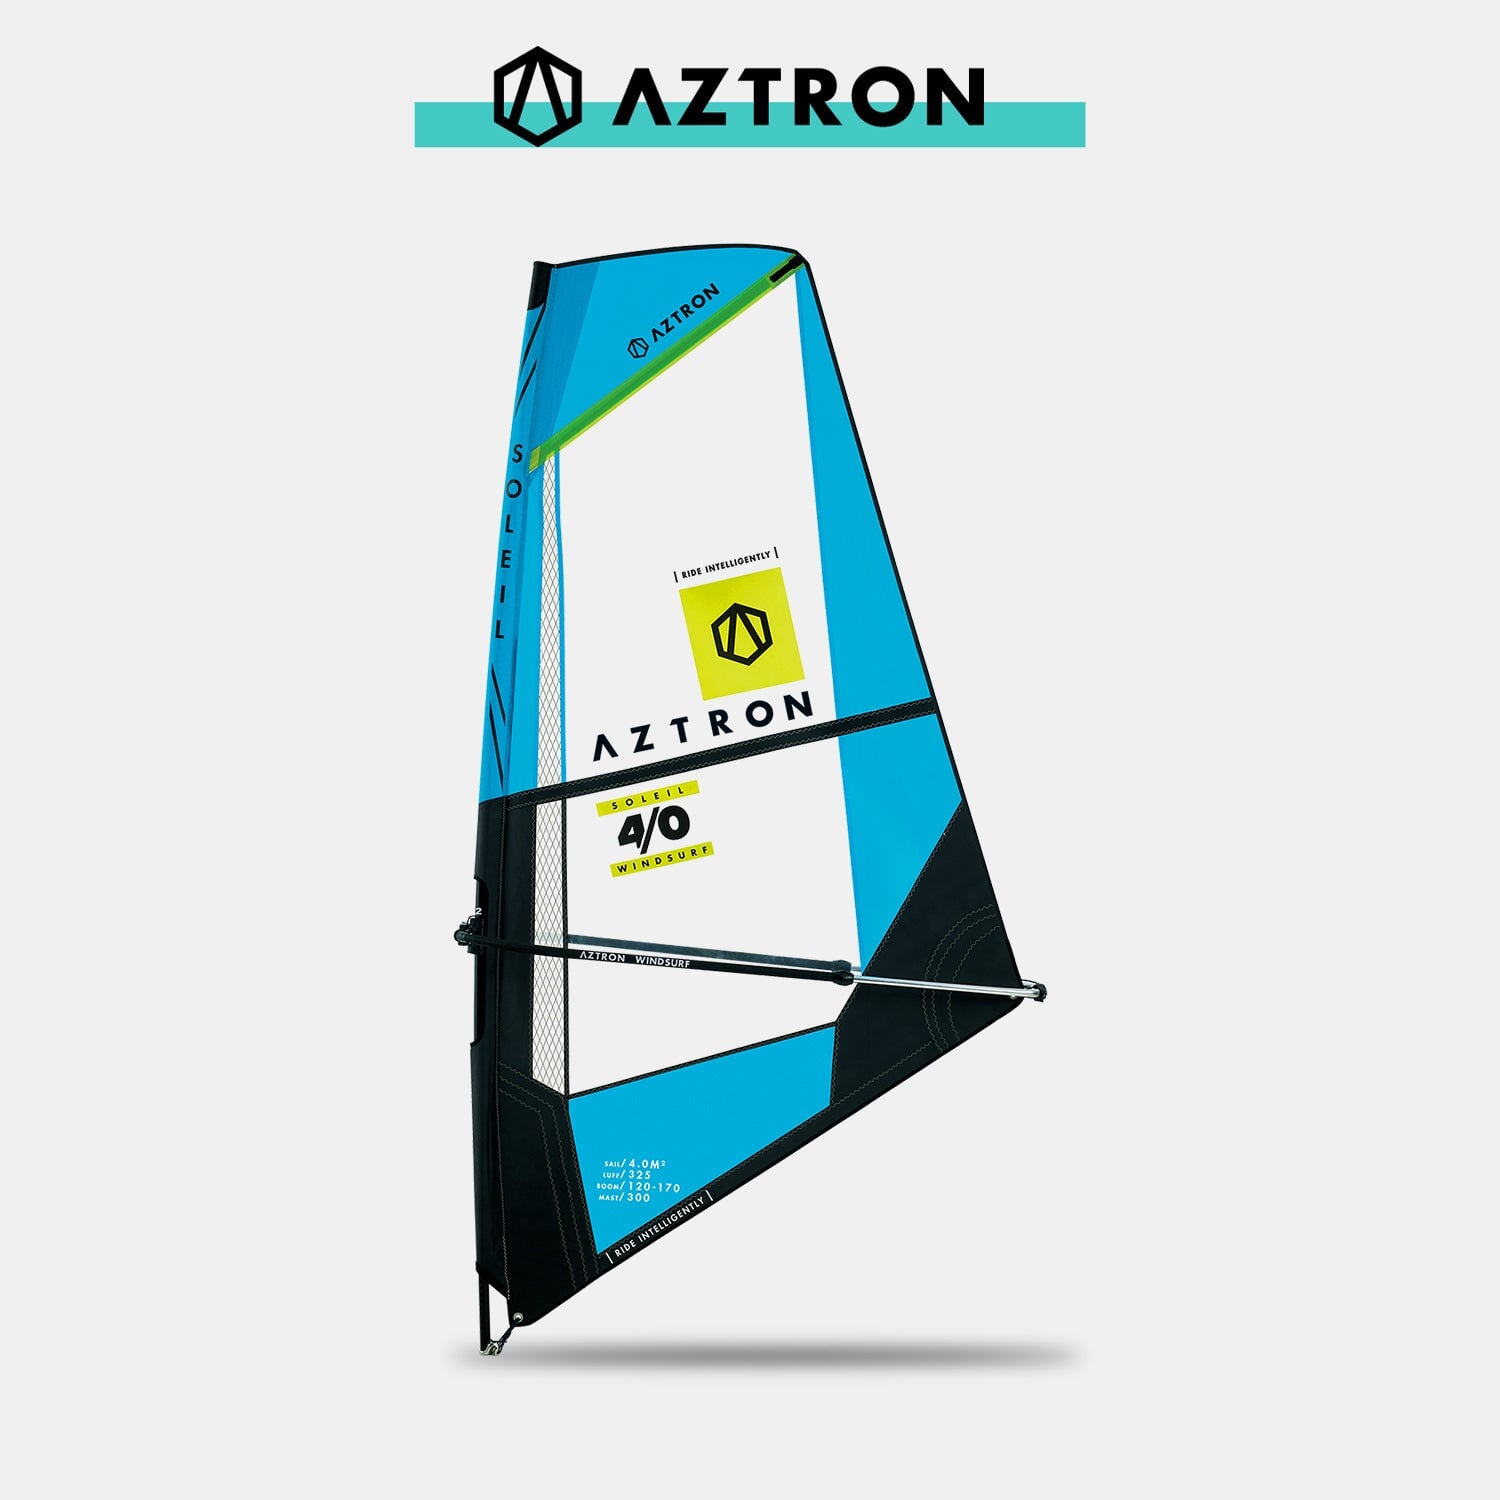 Impianto velico AZTRON 4.0